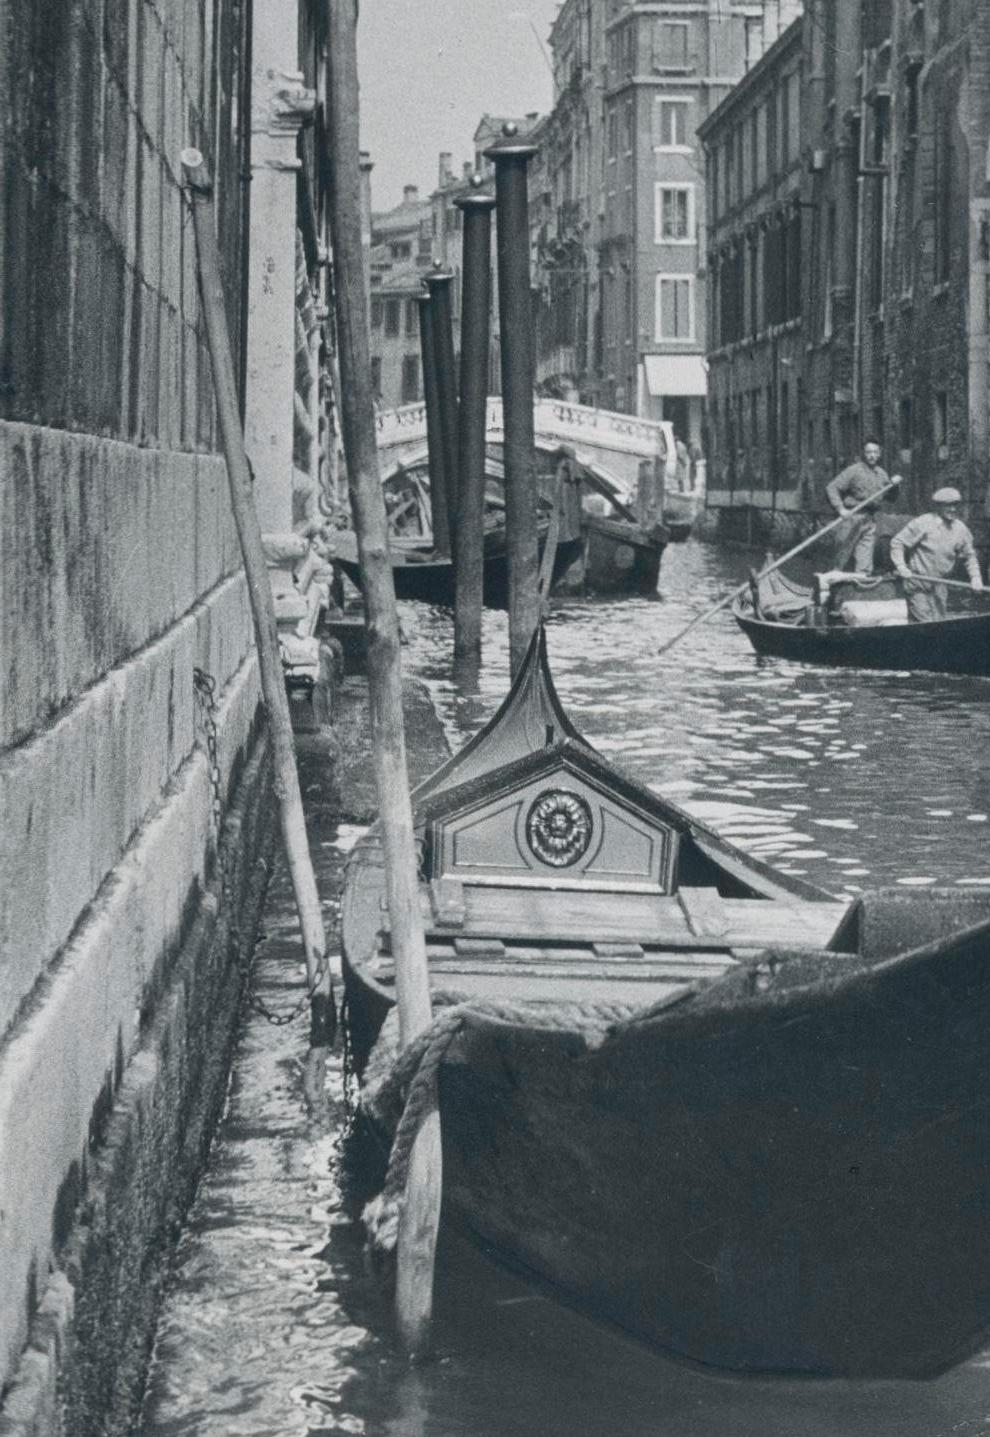 Venice - Gondel auf Wasser und Segelbrücke von Segeln, Italien, 1950er Jahre – Photograph von Erich Andres